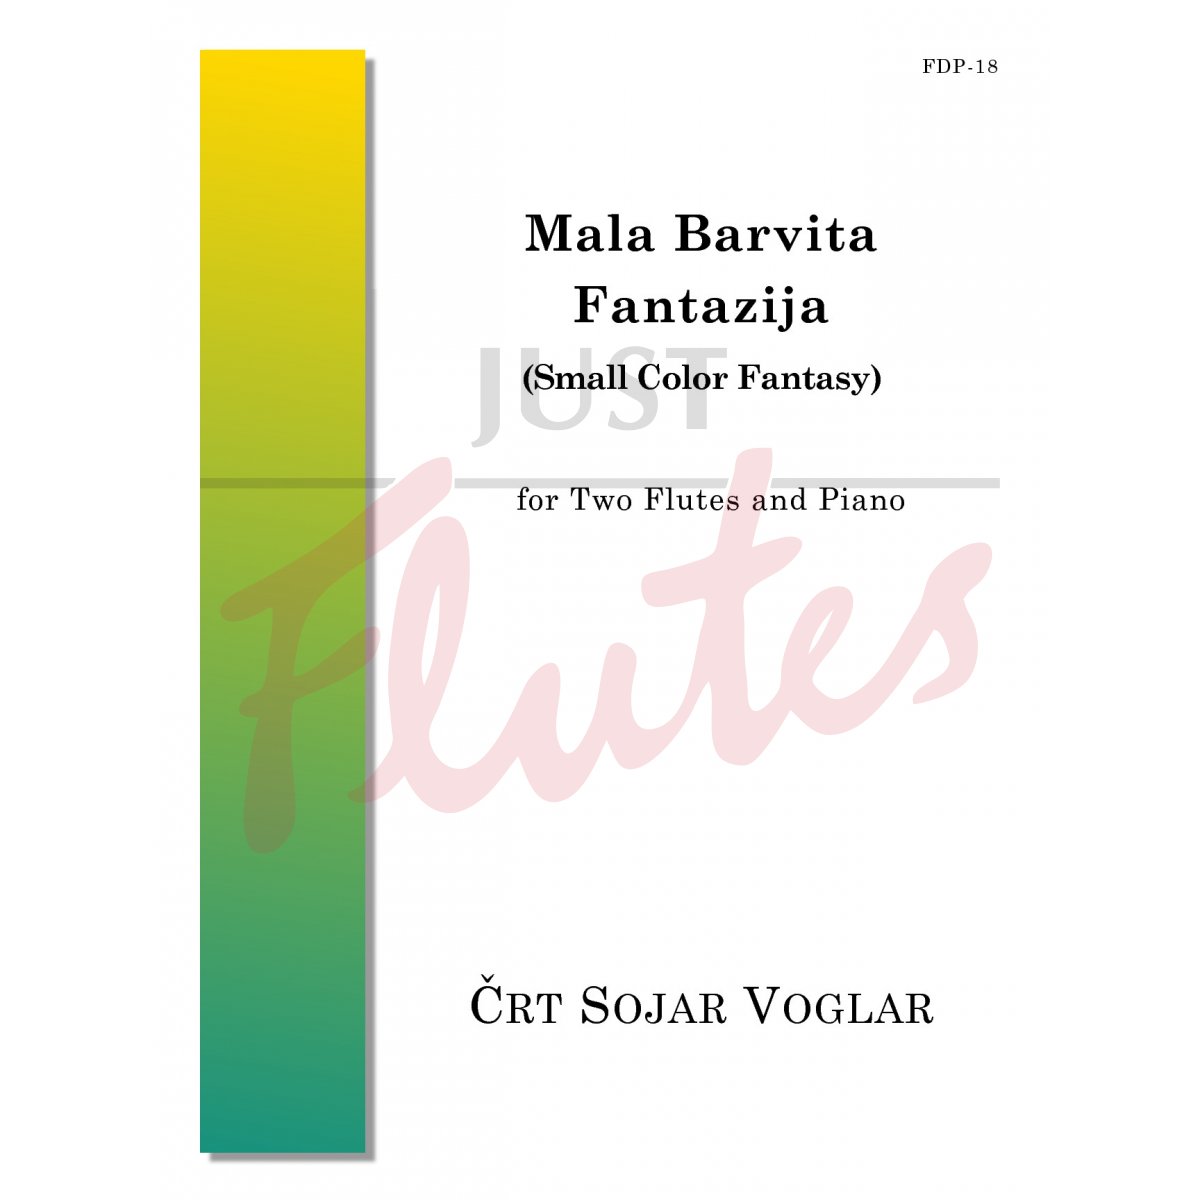 Mala Barvita Fantazija (Small Colour Fantasy) for Two Flutes and Piano